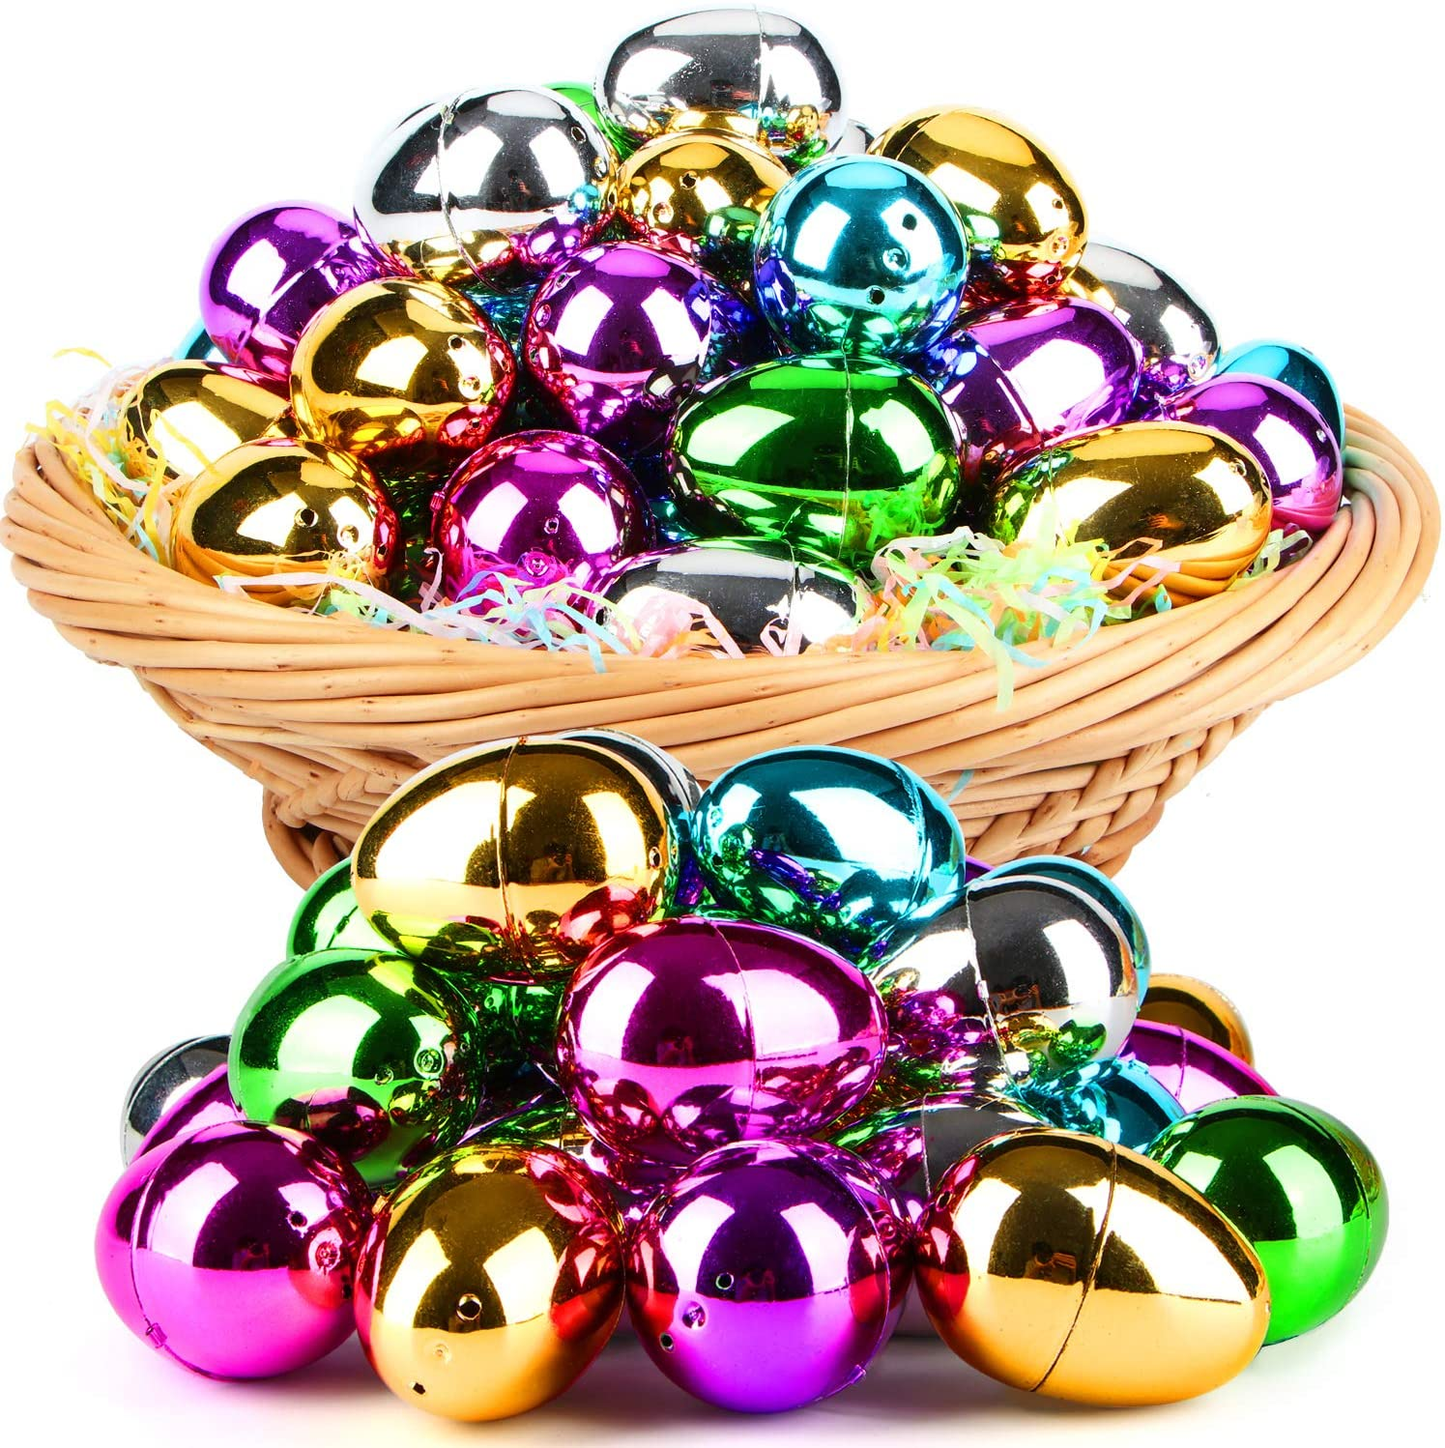 48 PCS Plastic Easter Eggs, Easter Basket Stuffers for Toddler Kids Baby Boys Girls Teens, Plastic Easter Eggs Fillable, Gold Easter Egg, Metallic Easter Egg